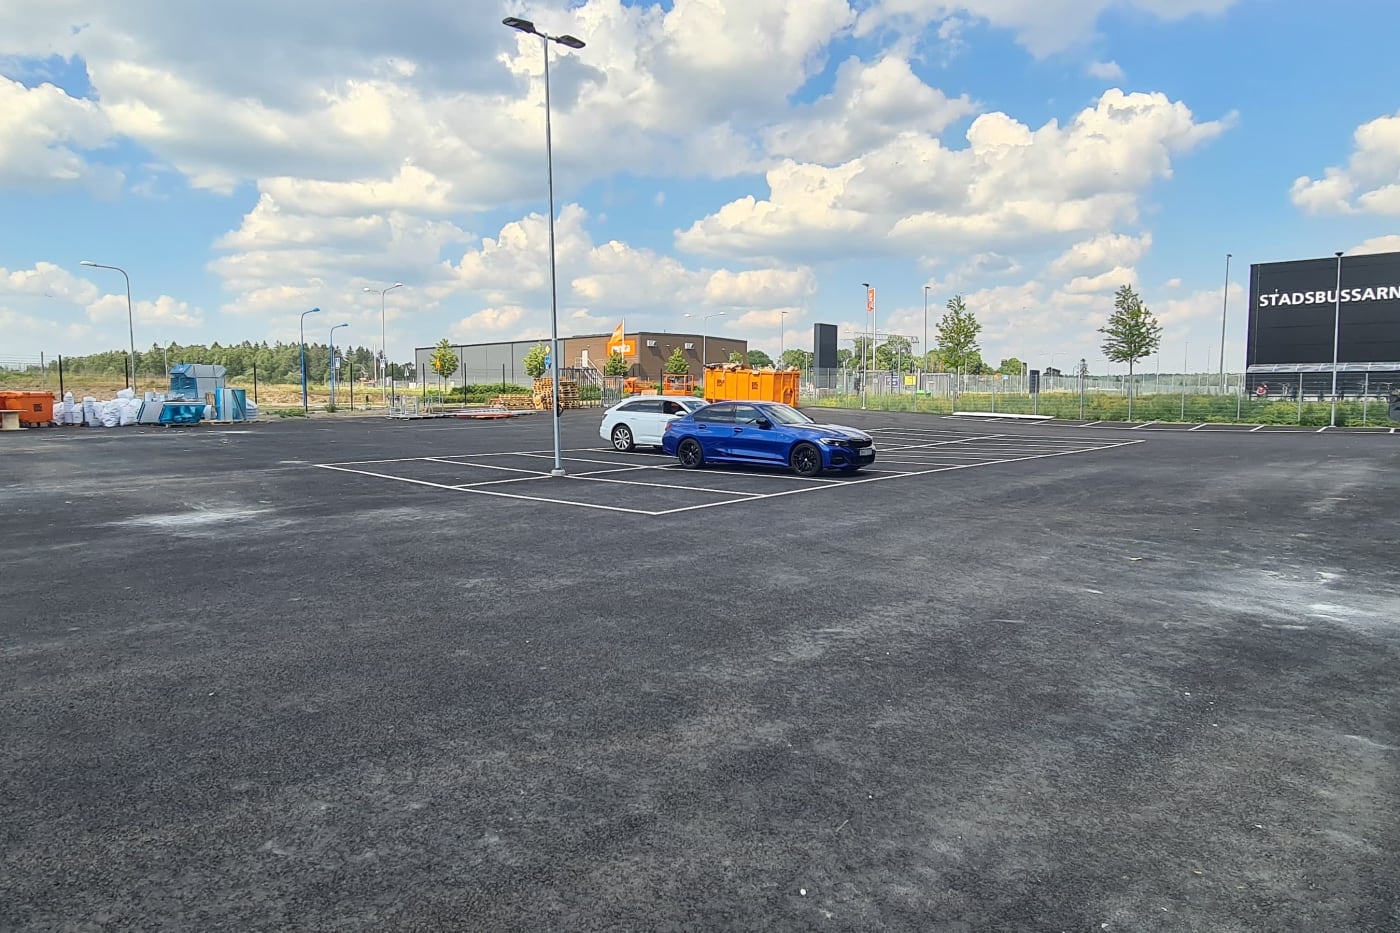 Begagnade bilar Uppsala bild på parkering för velox motor